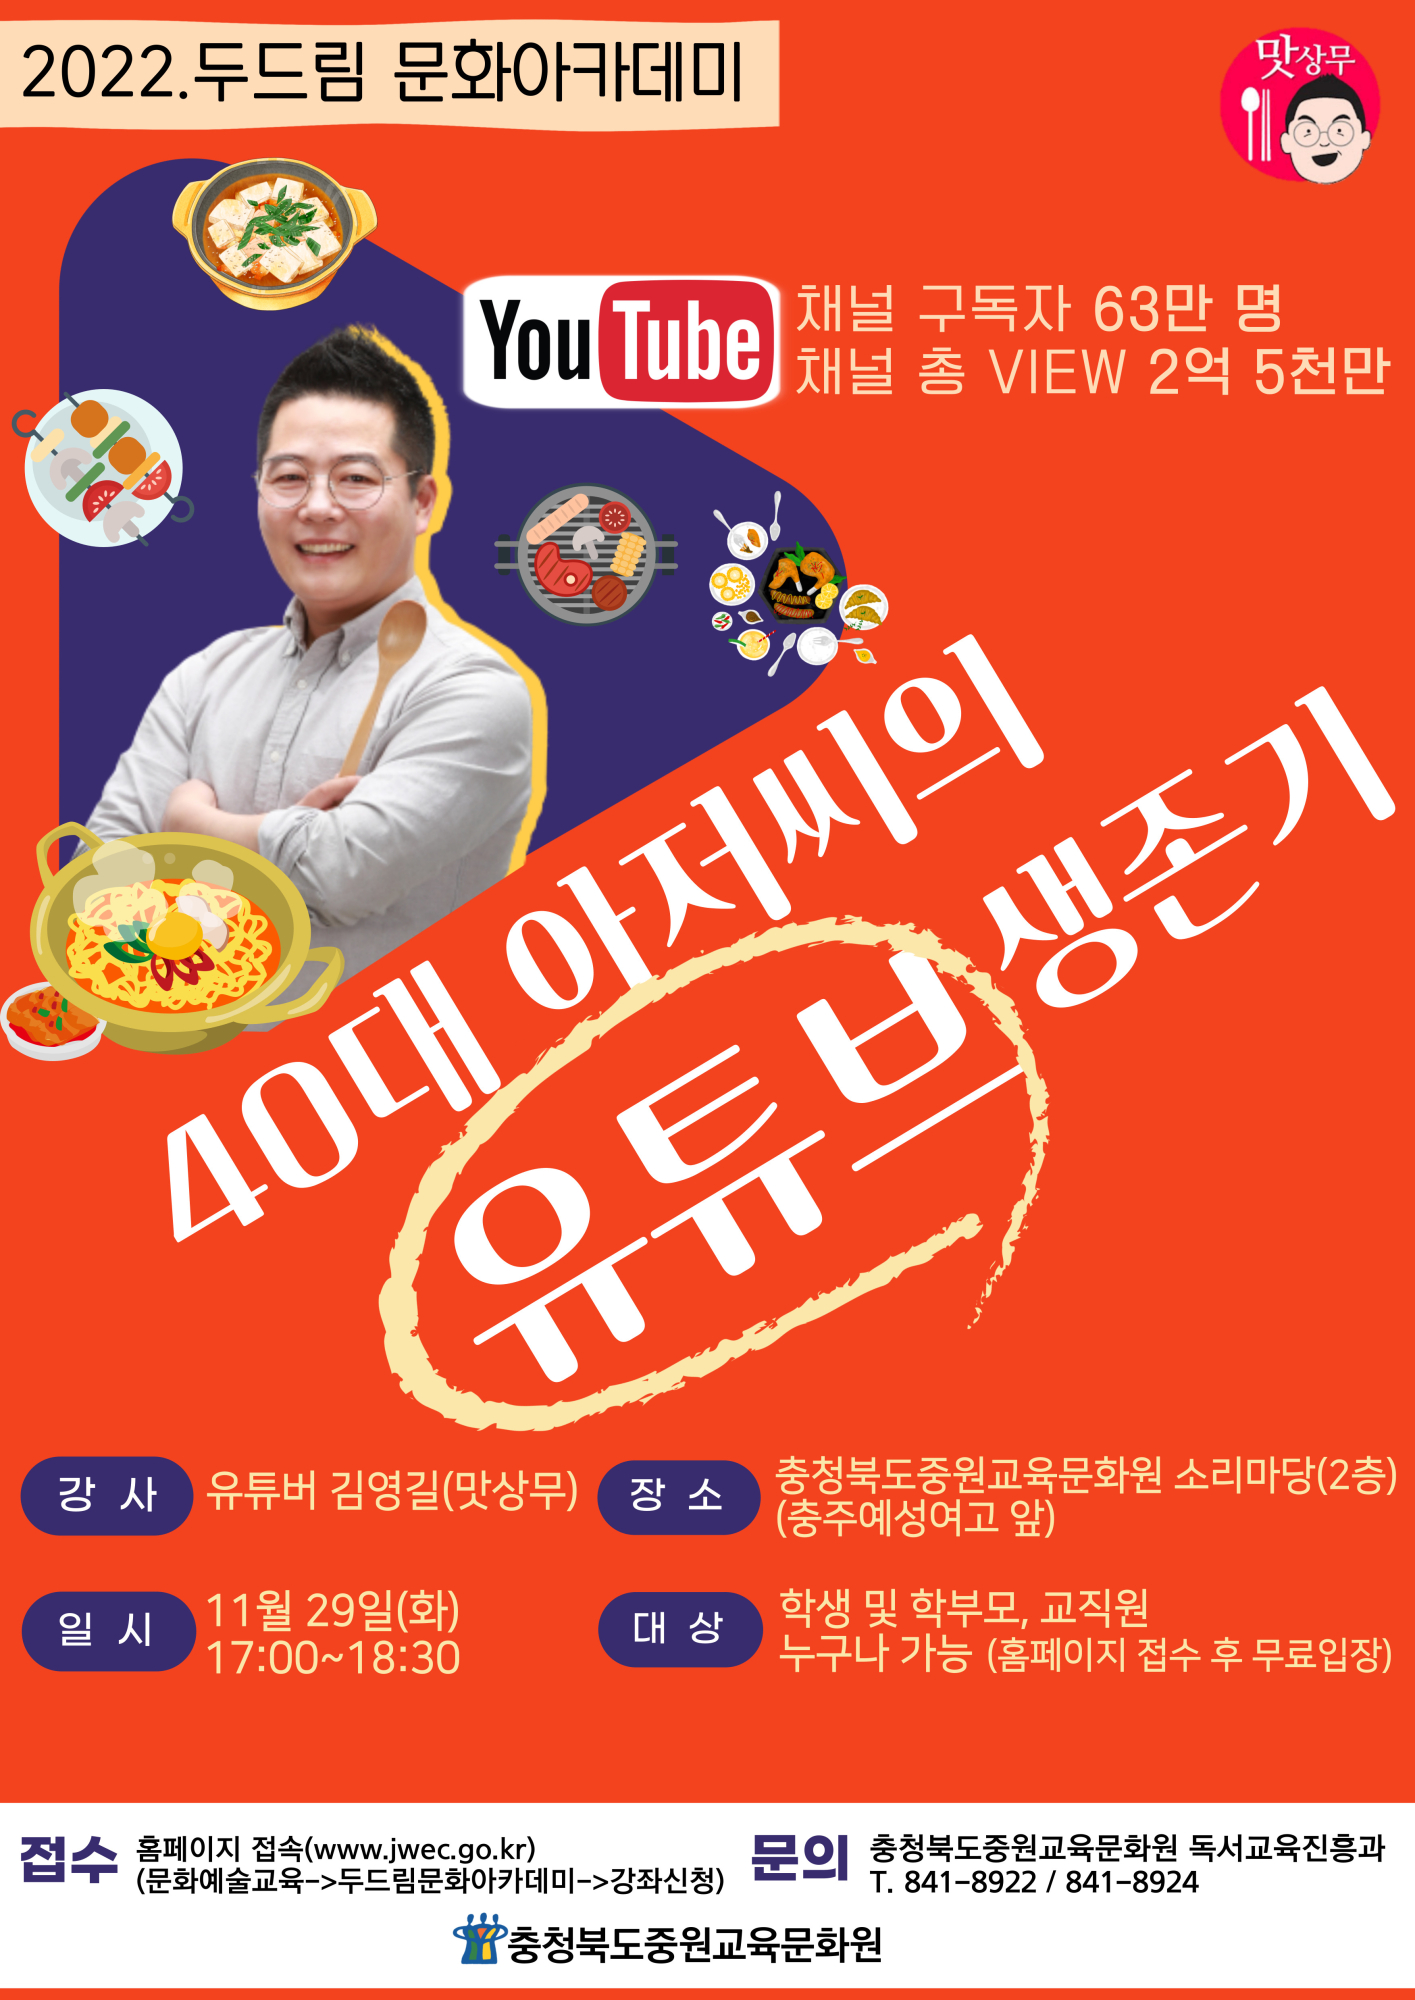 사본 -두드림 문화아카데미 김영길 강연(11월 29일)